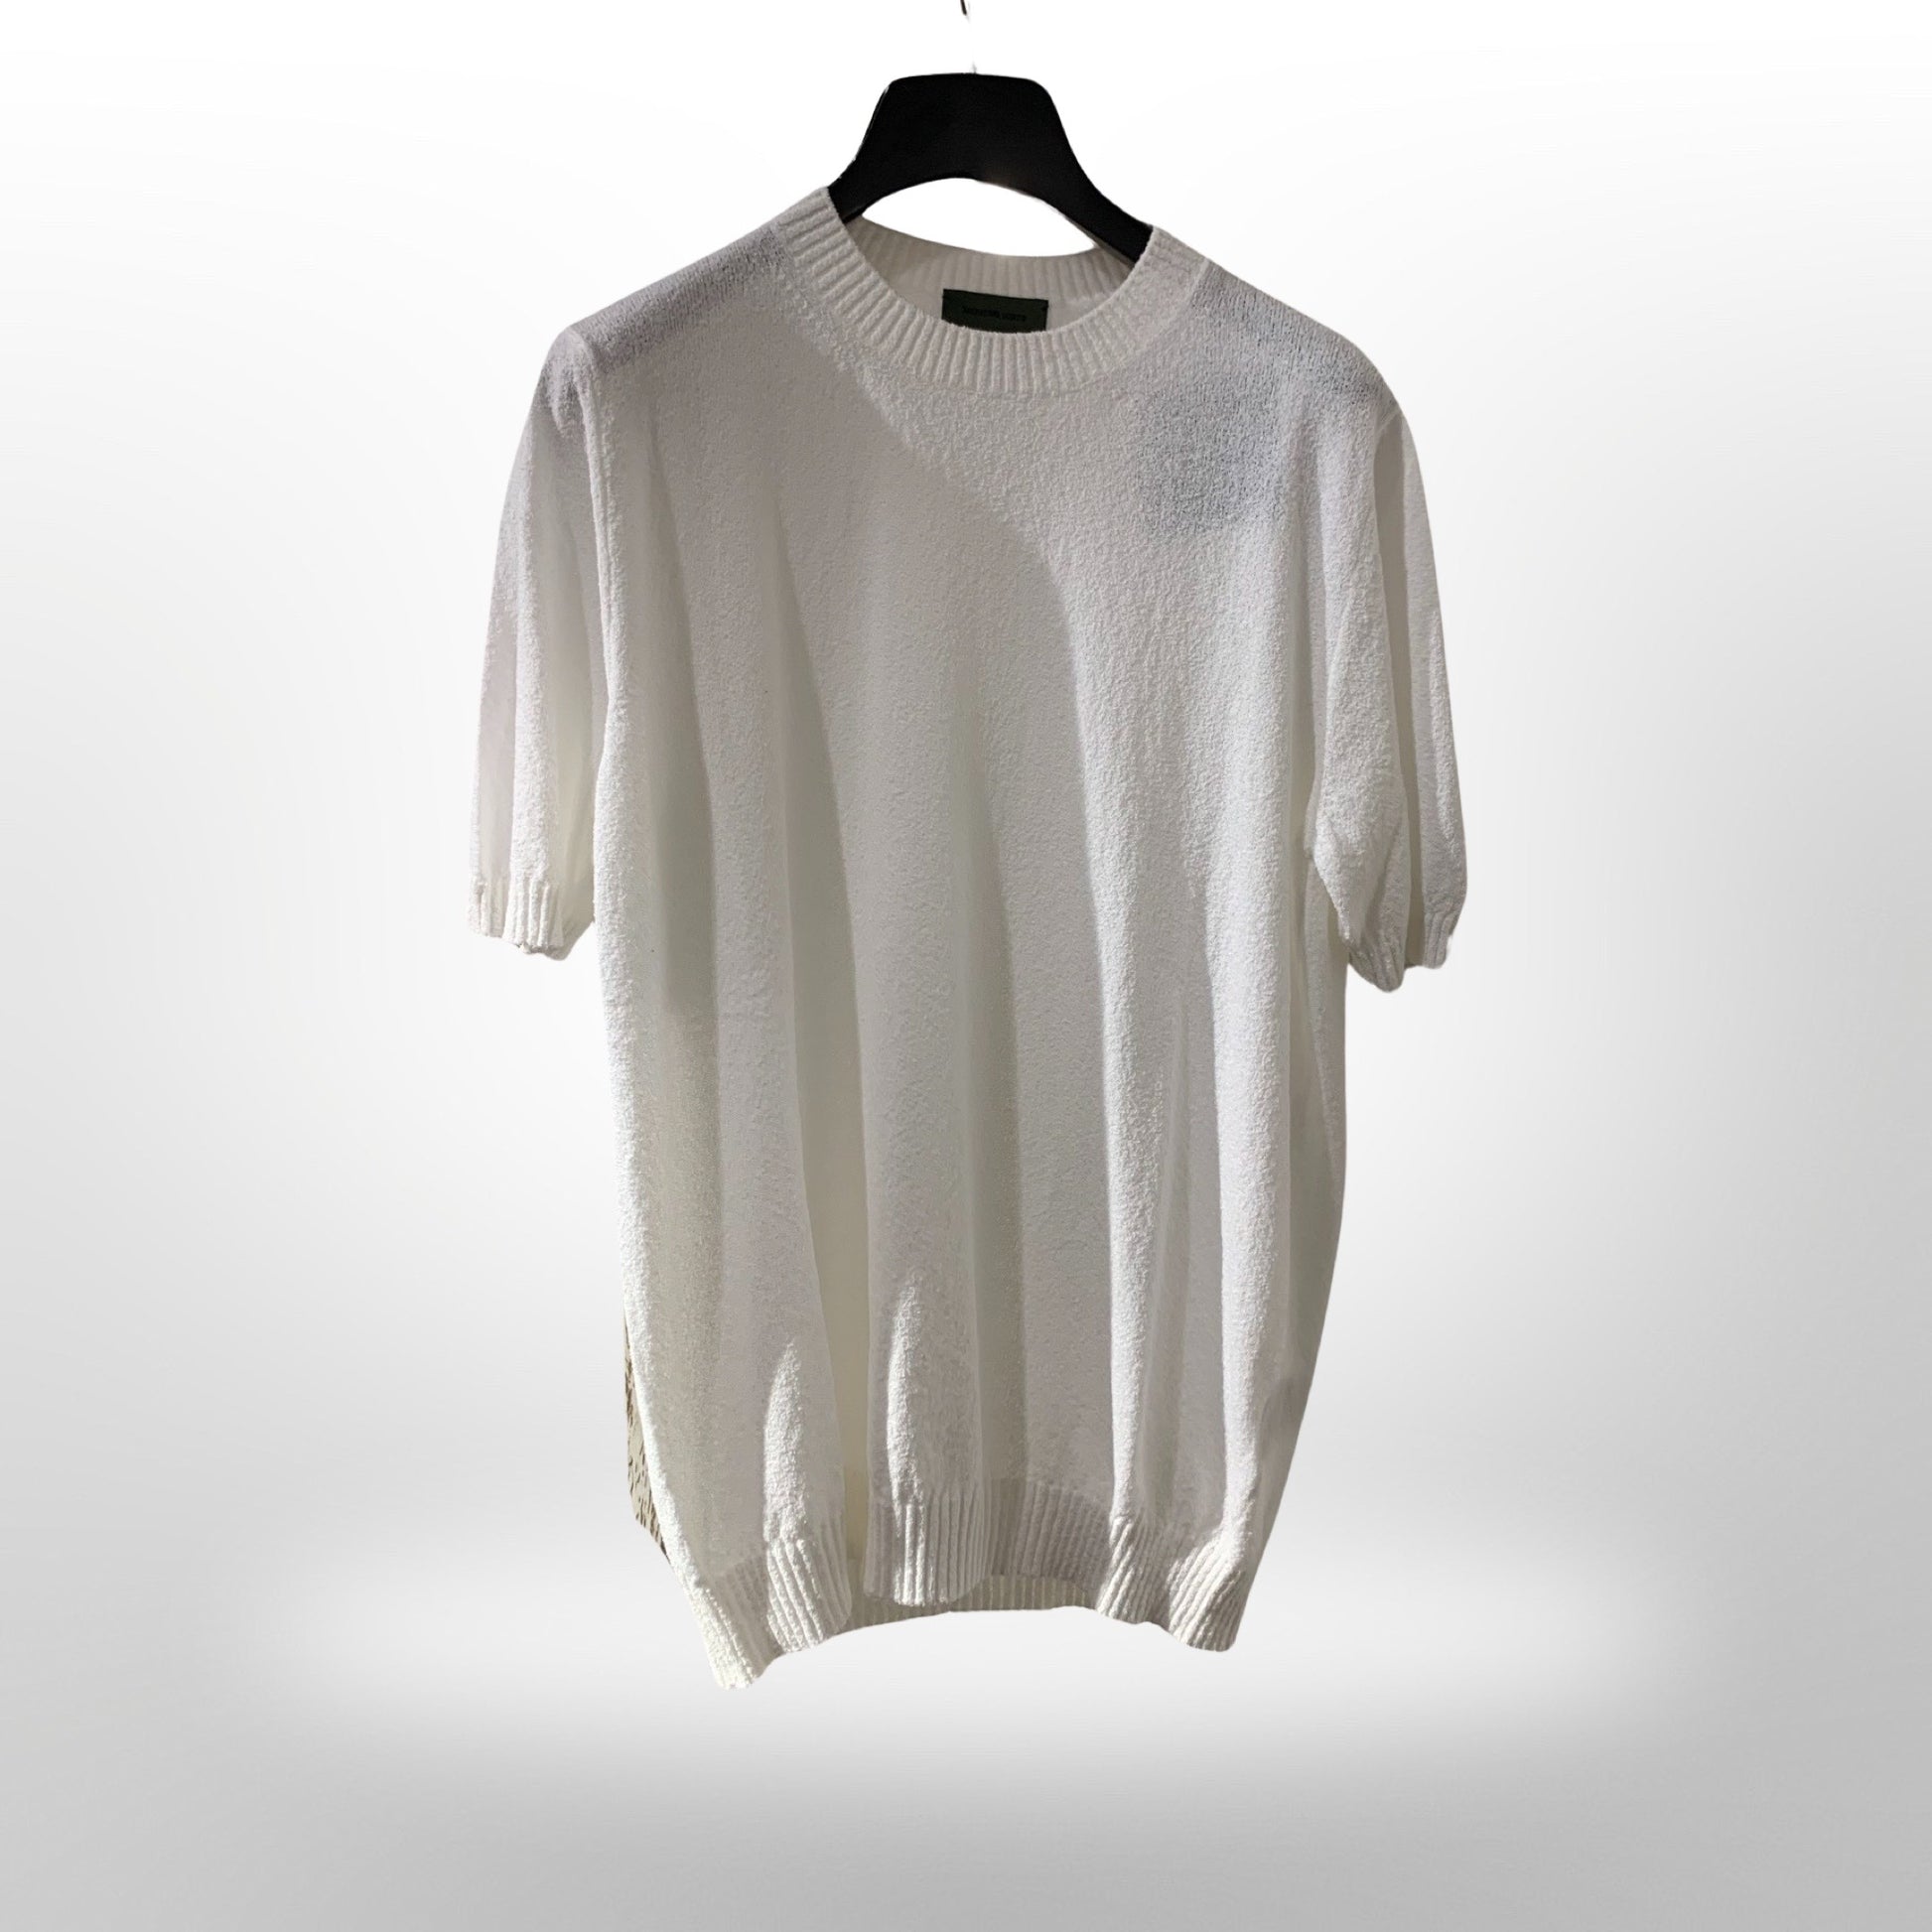 Sweater White SALAVTORE SCHITO Salvatore Schito